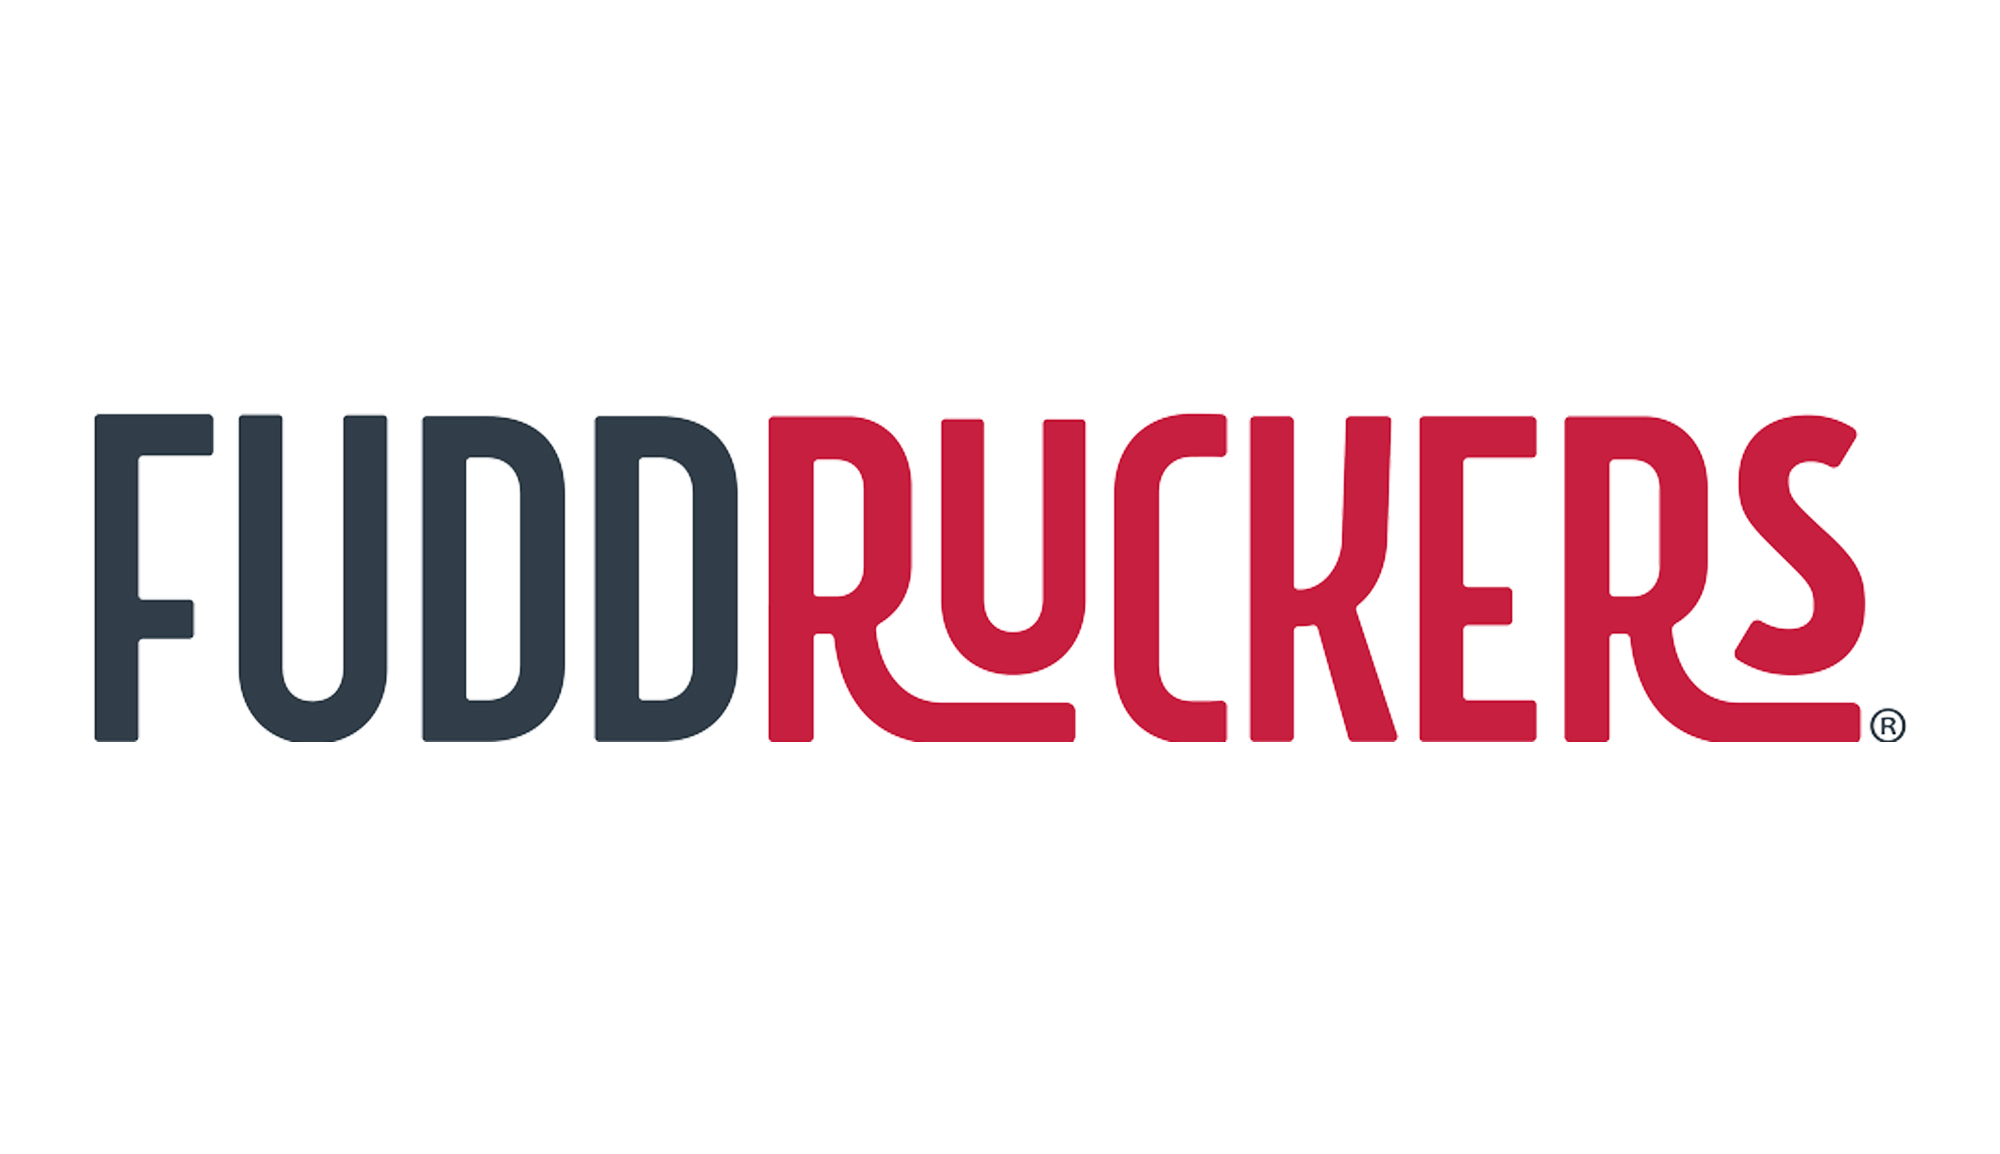 Fuddruckers restaurant logo